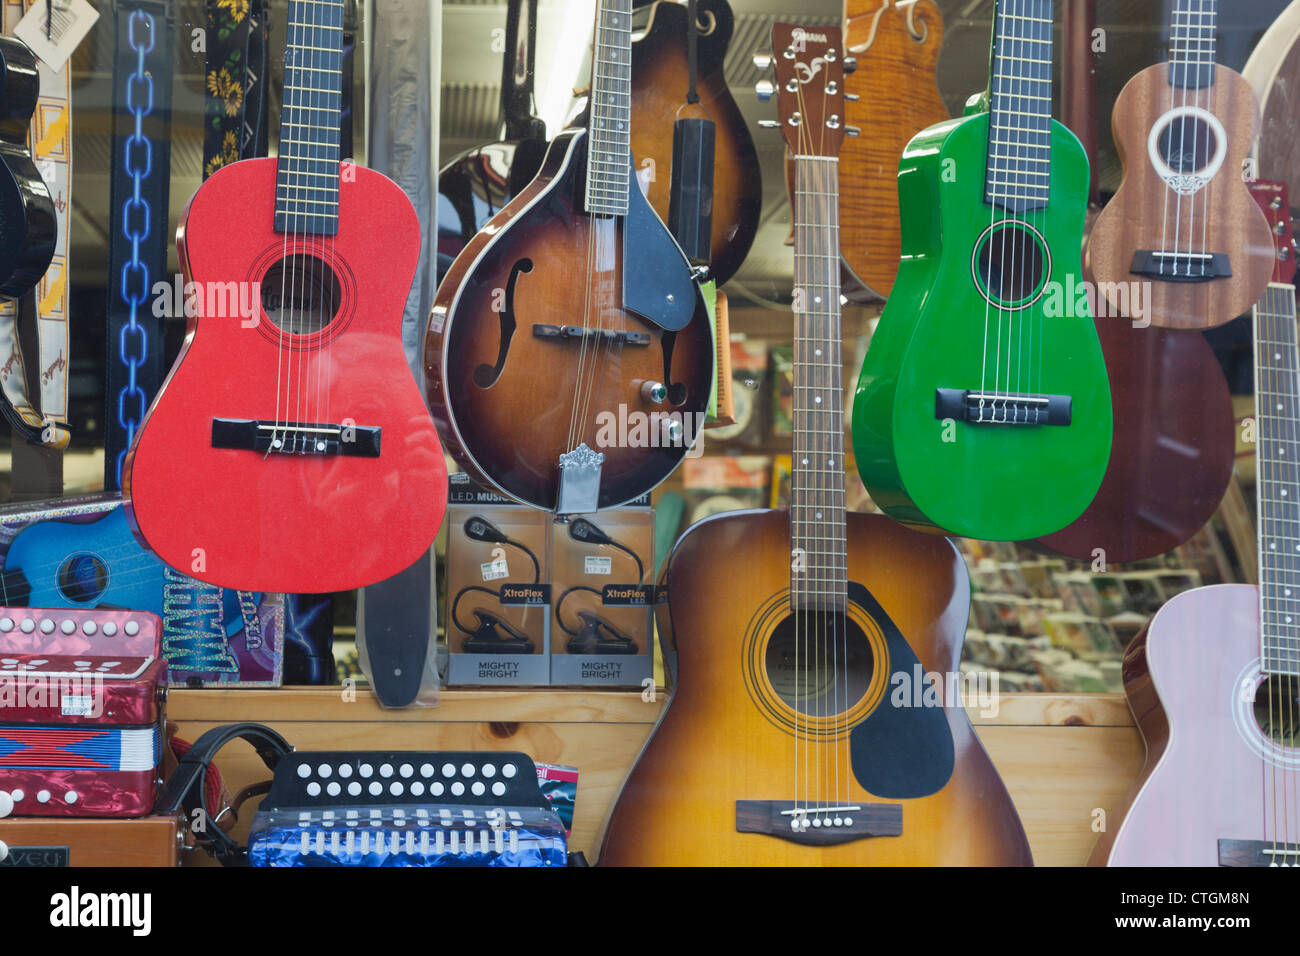 Killarney, comté de Kerry, Irlande. Instruments à cordes à vendre en vitrine. Des guitares, des mandolines, des ukulélés. Banque D'Images